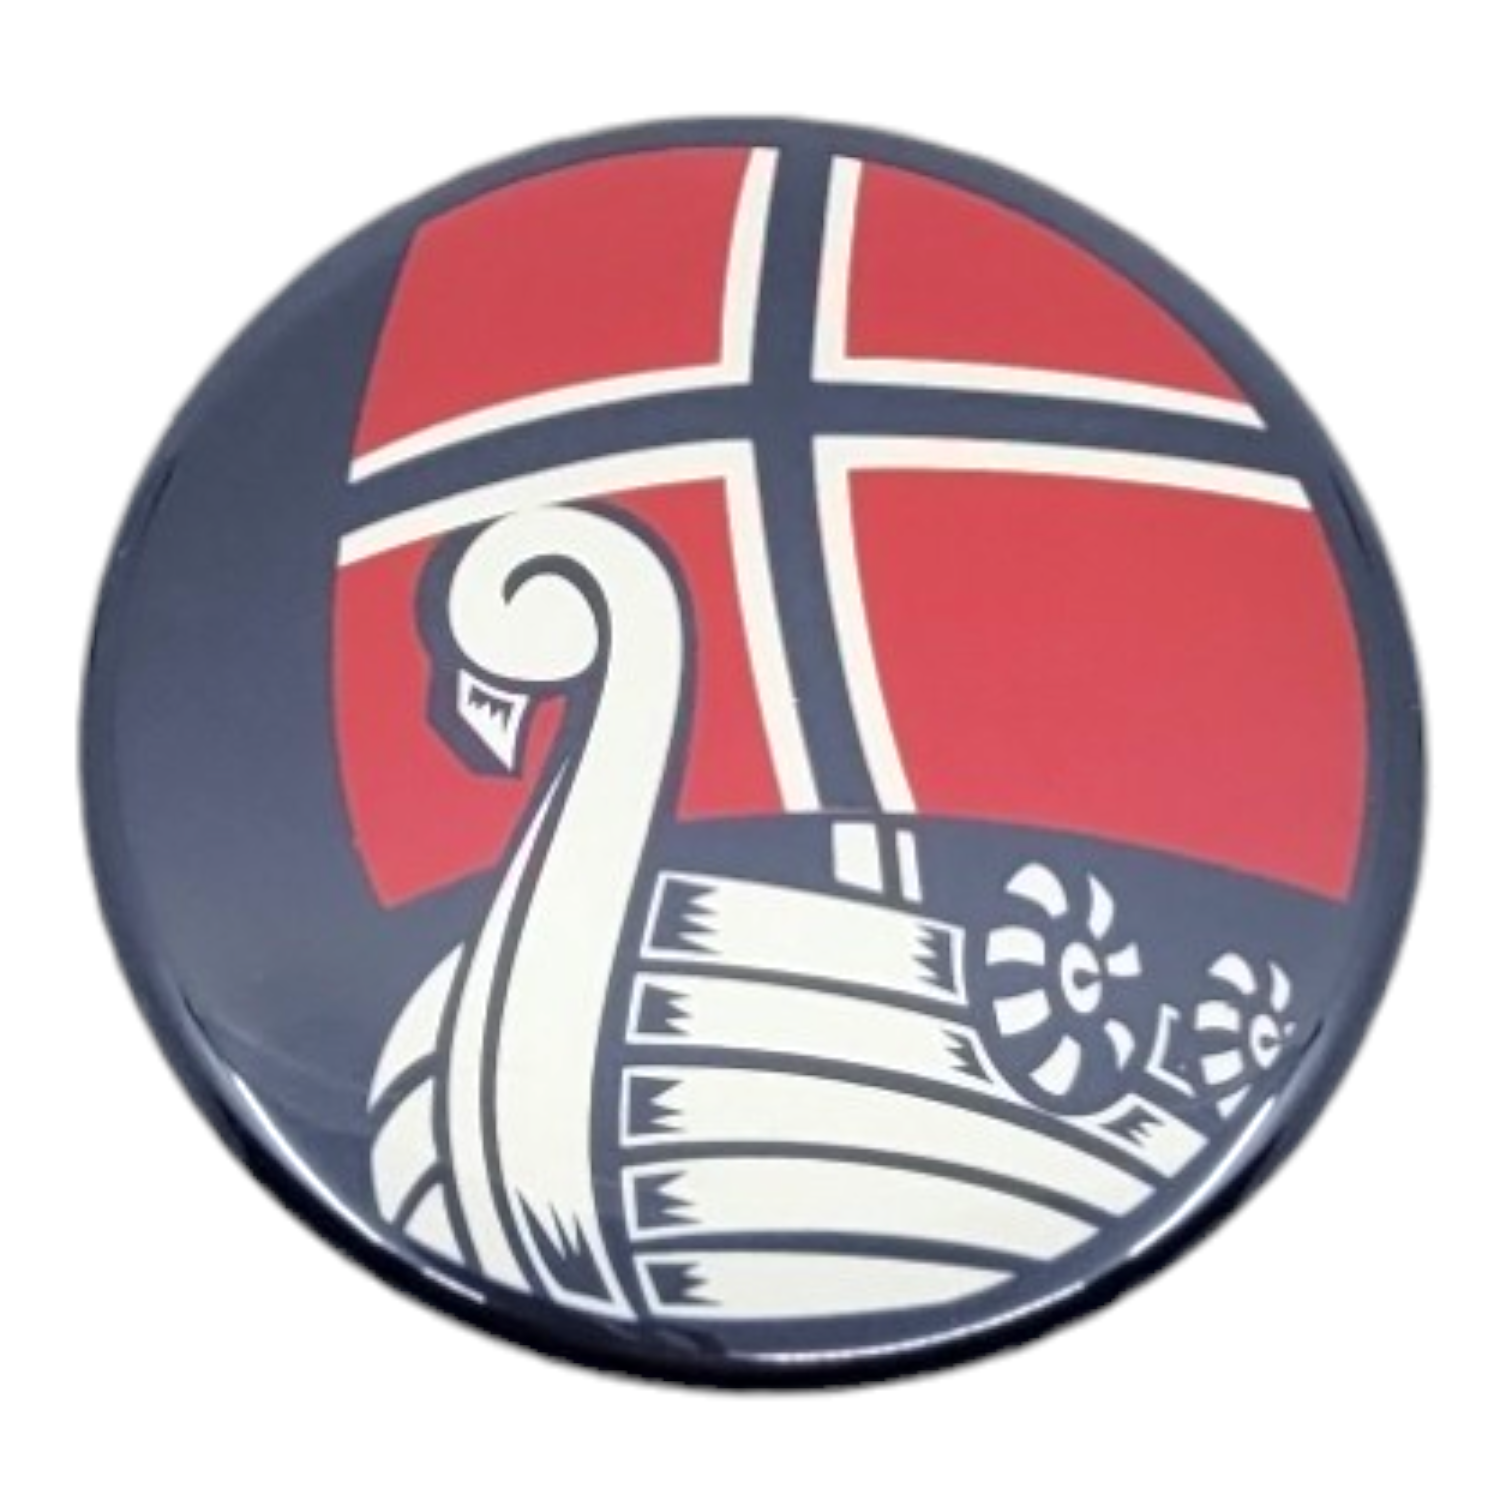 Magnet: Norway Viking Ship, 2.25" Round Magnet